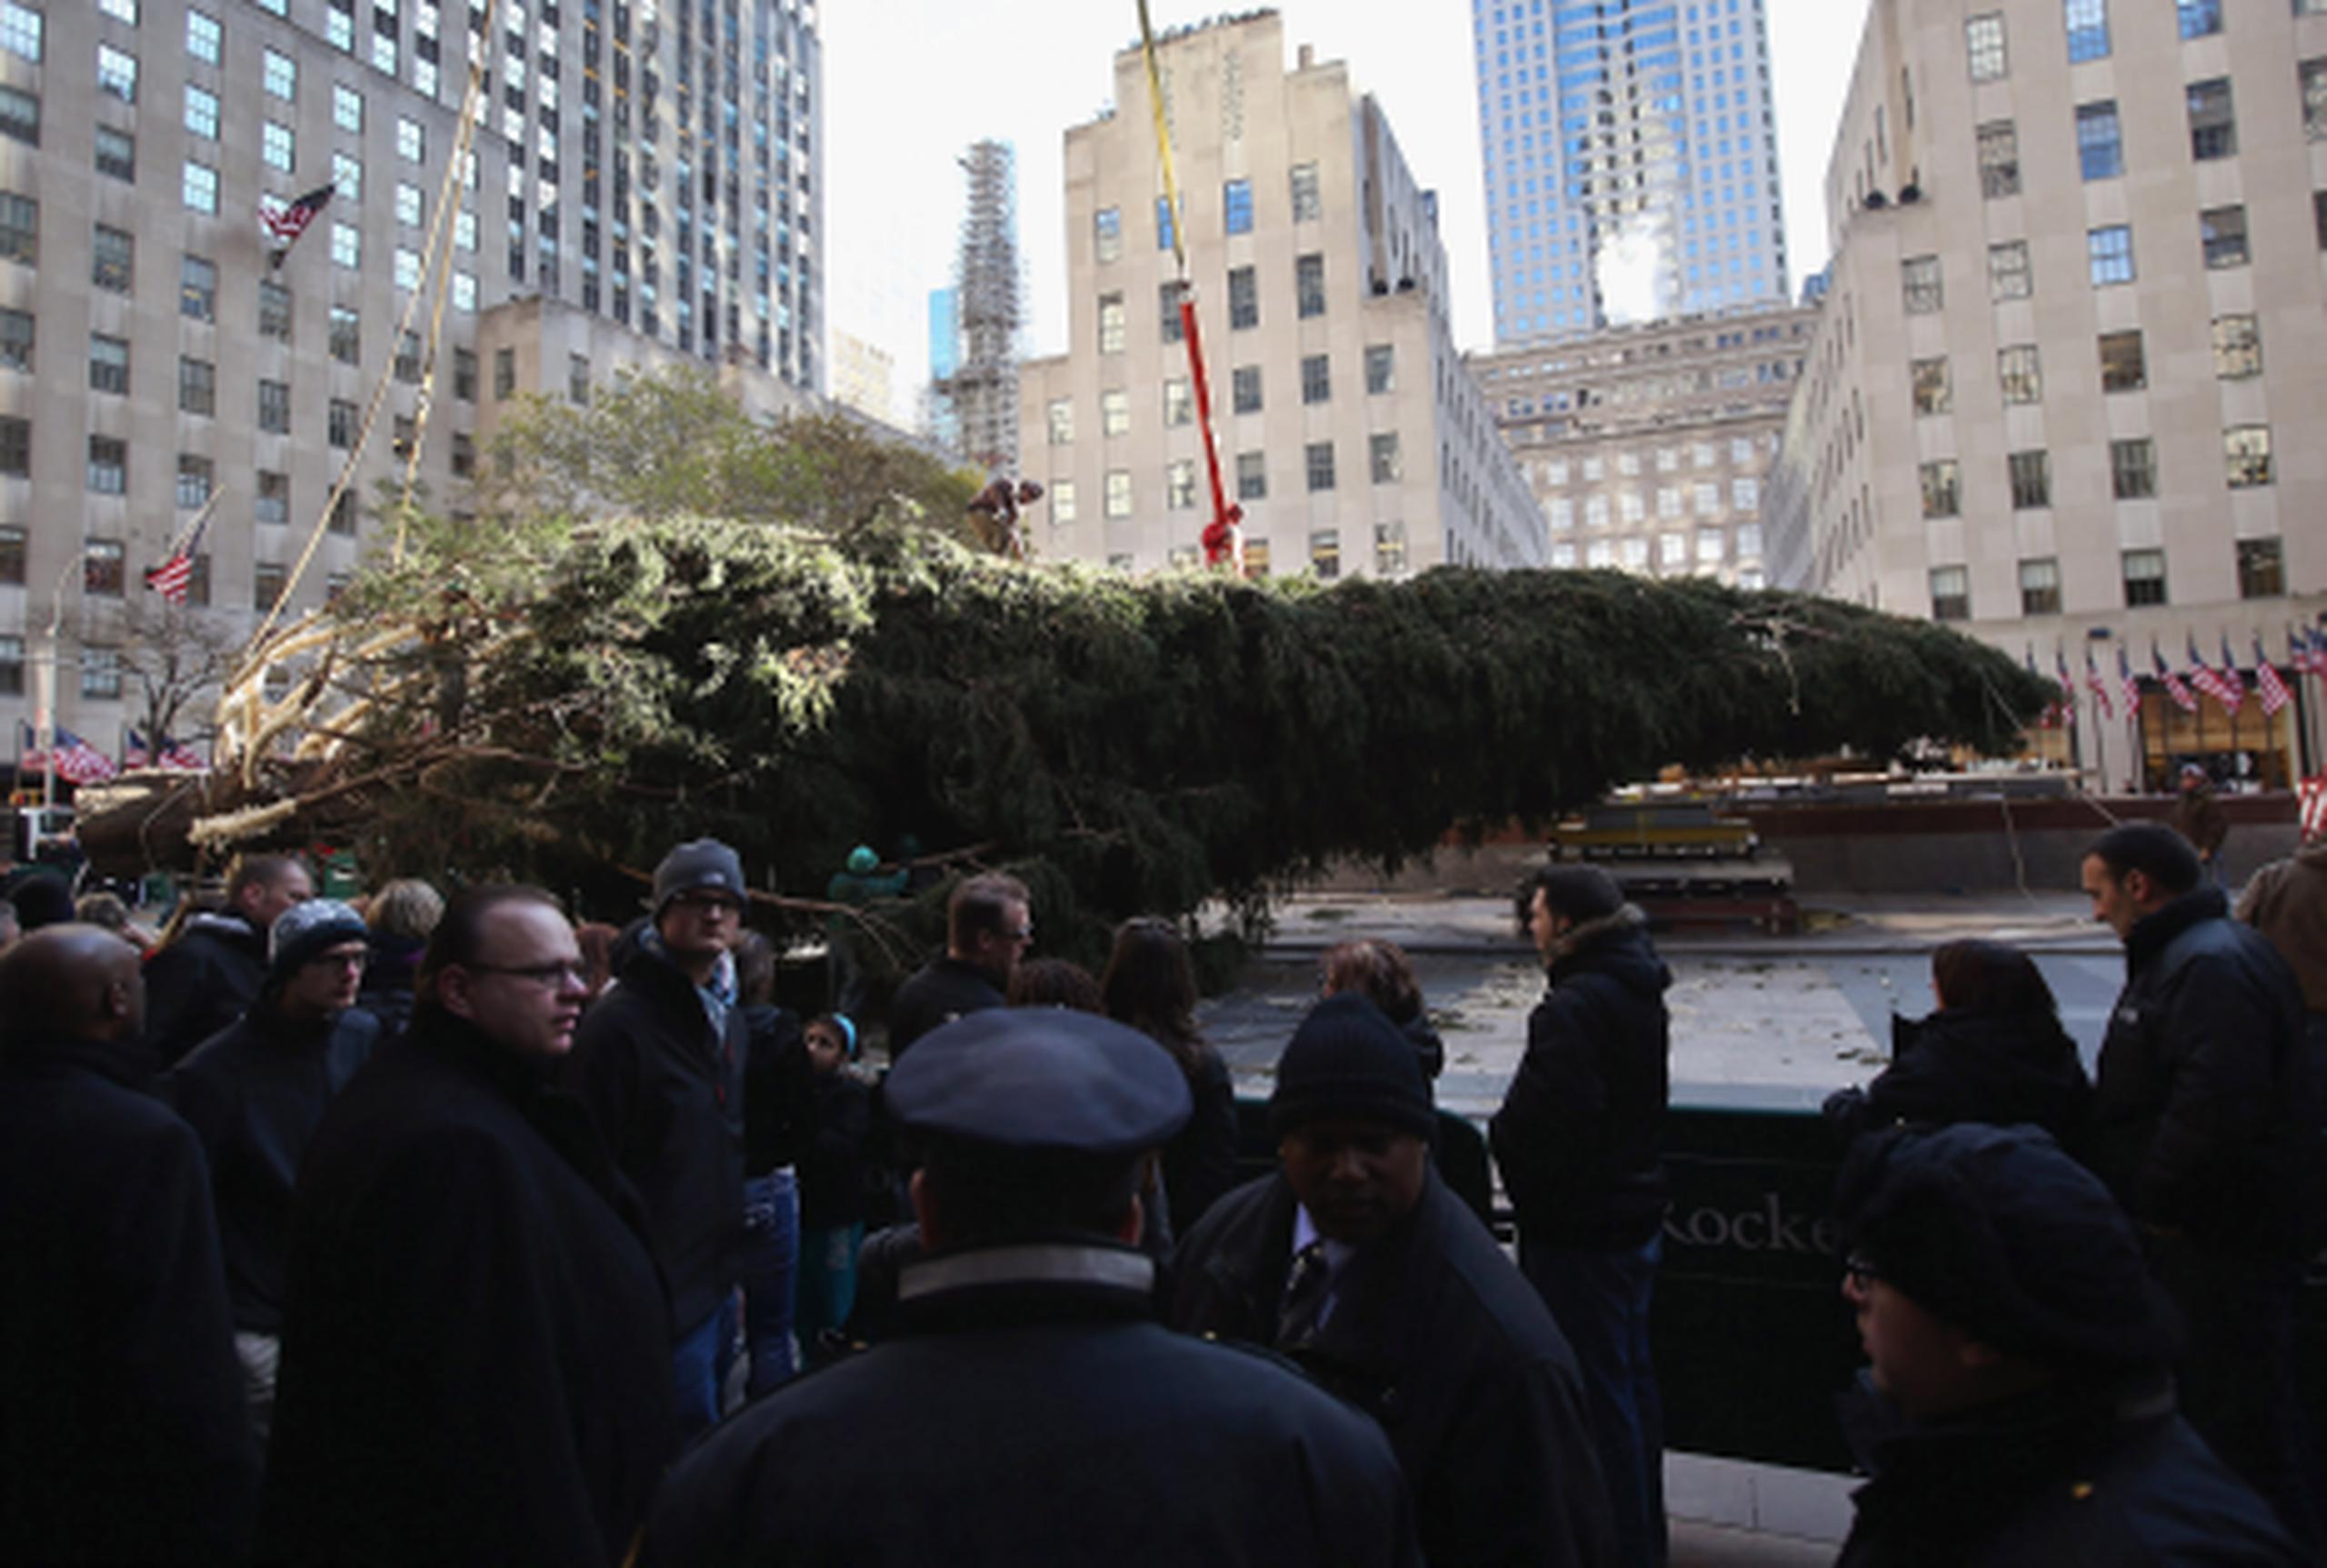 Esta tarde el árbol será trasladado en un camión de 35 metros de largo hasta el Rockefeller Center, donde los trabajadores empezarán a decorar sus ramas con 45.000 bombillas, que se encenderán el próximo 28 de noviembre. (AFP)